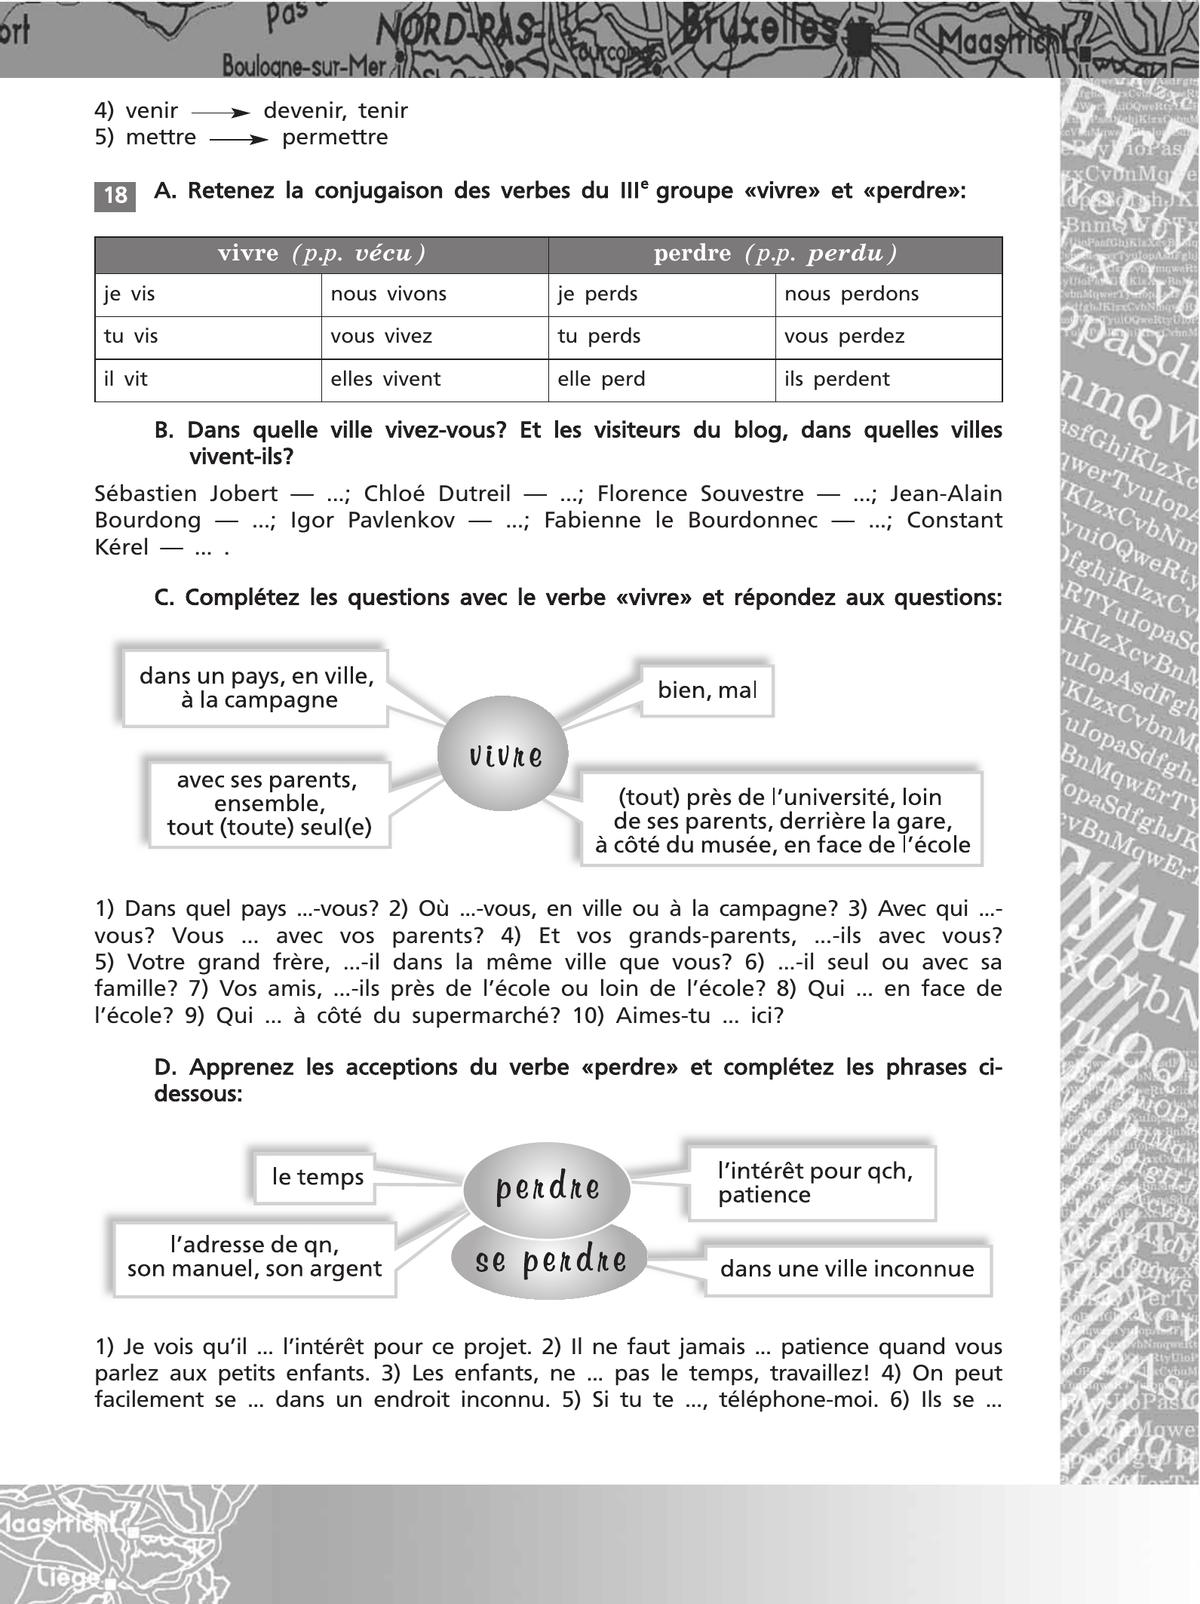 Французский язык. Второй иностранный язык. Сборник упражнений. 8-9 классы (второй и третий годы обучения) 9